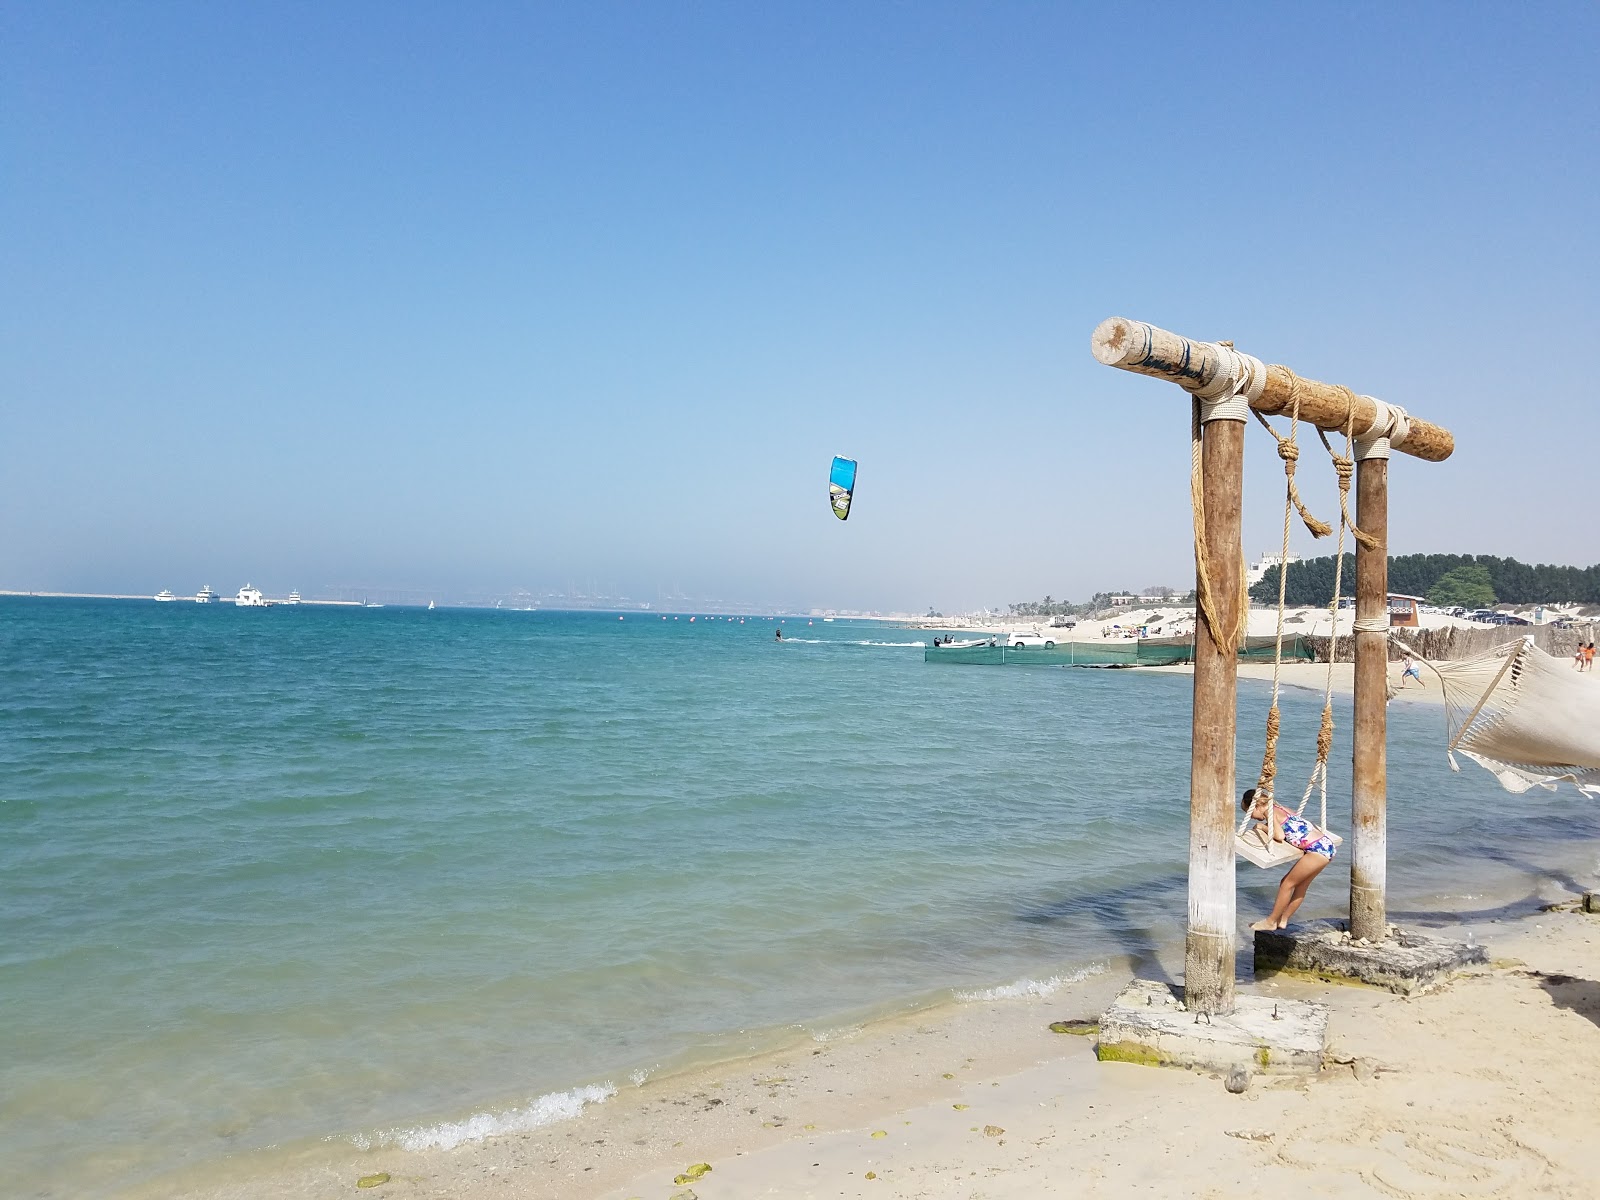 Fotografie cu Jebel Ali Beach și așezarea